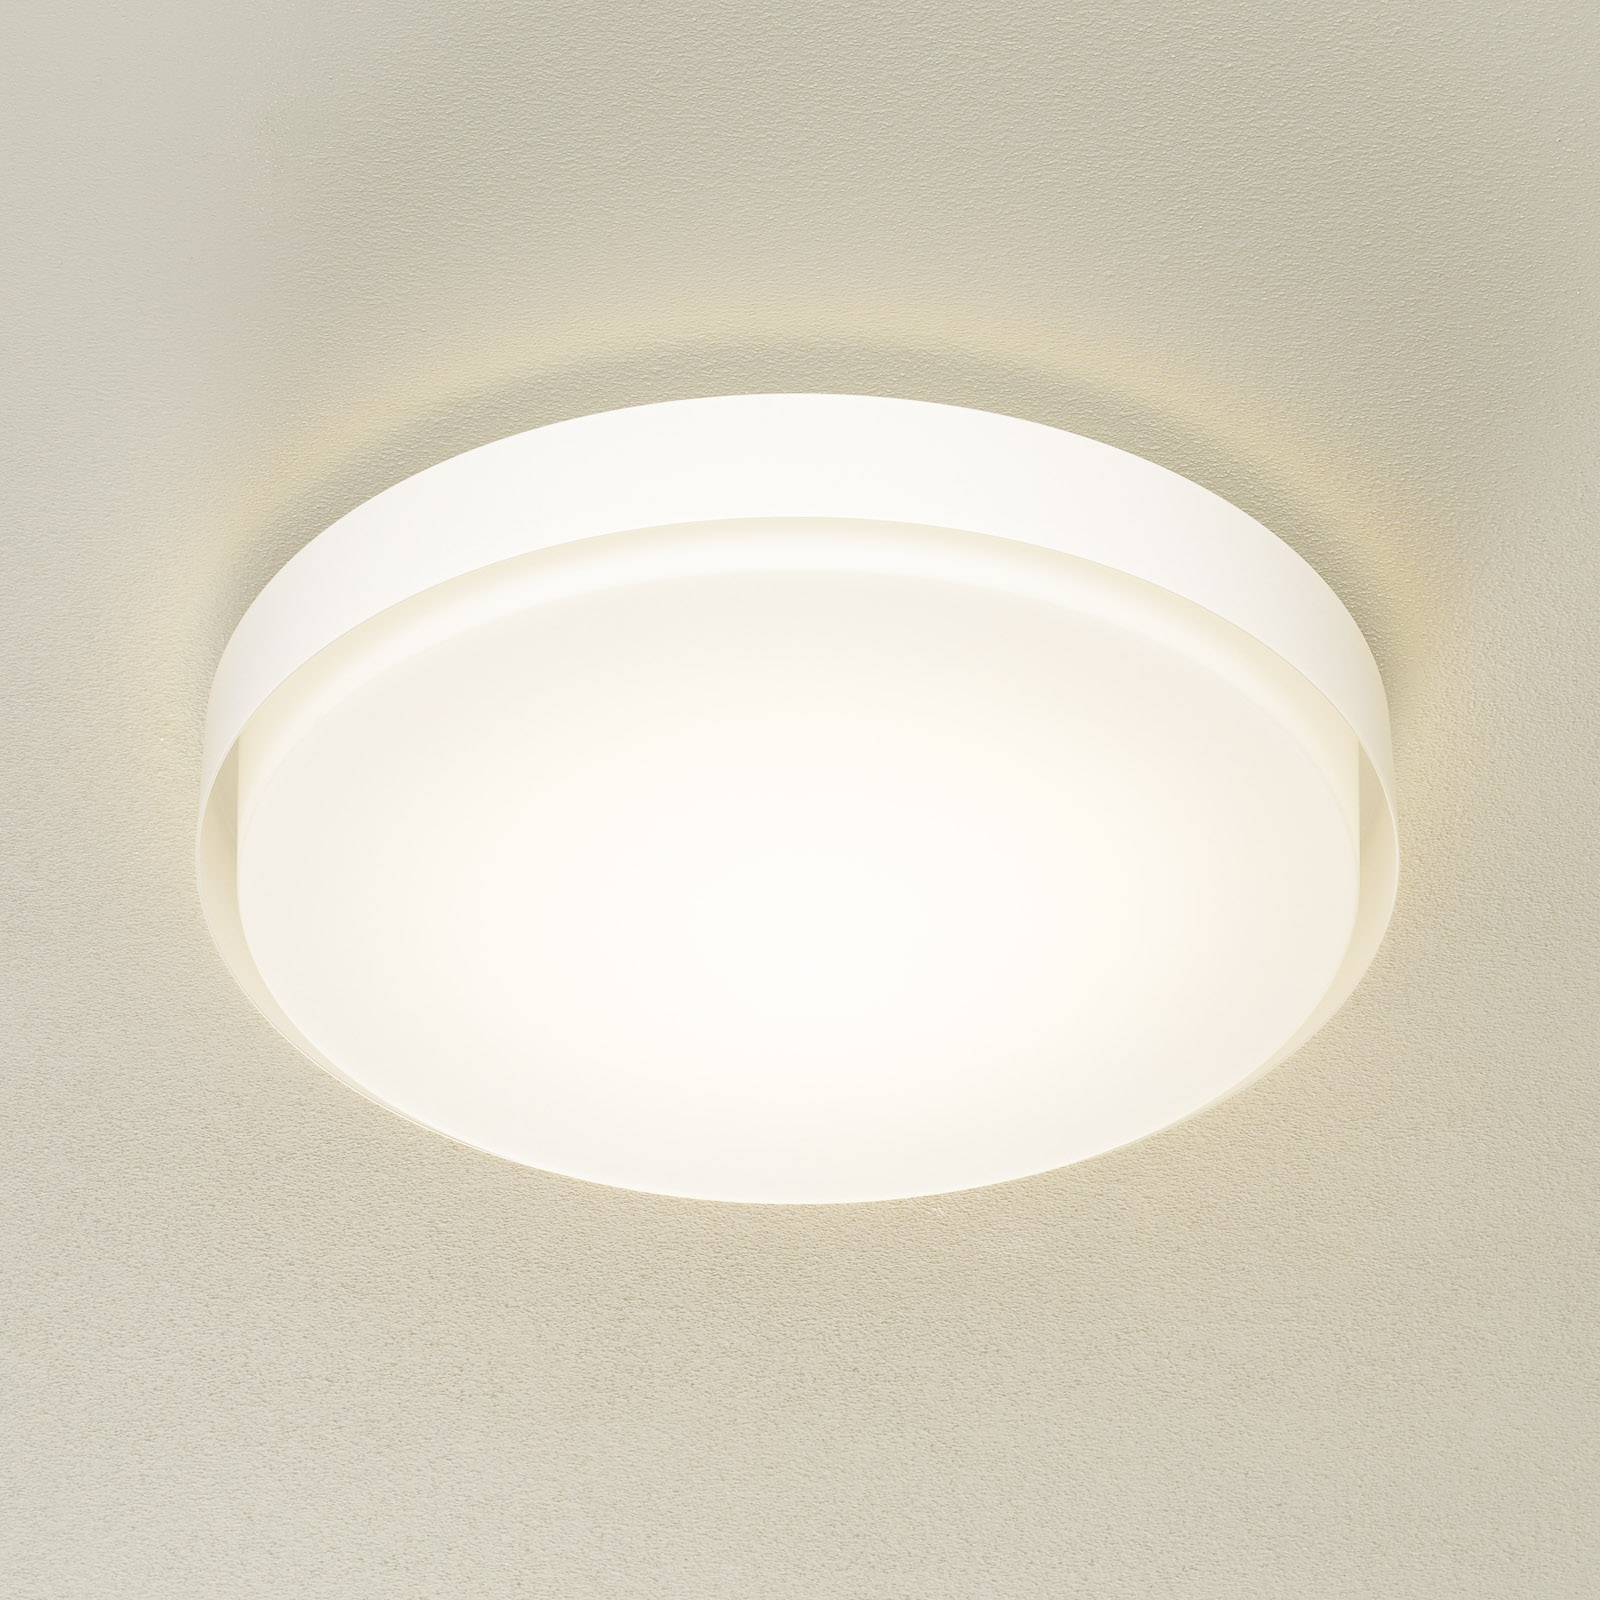 BEGA 12165 LED-Deckenleuchte weiß, Ø 50 cm, DALI